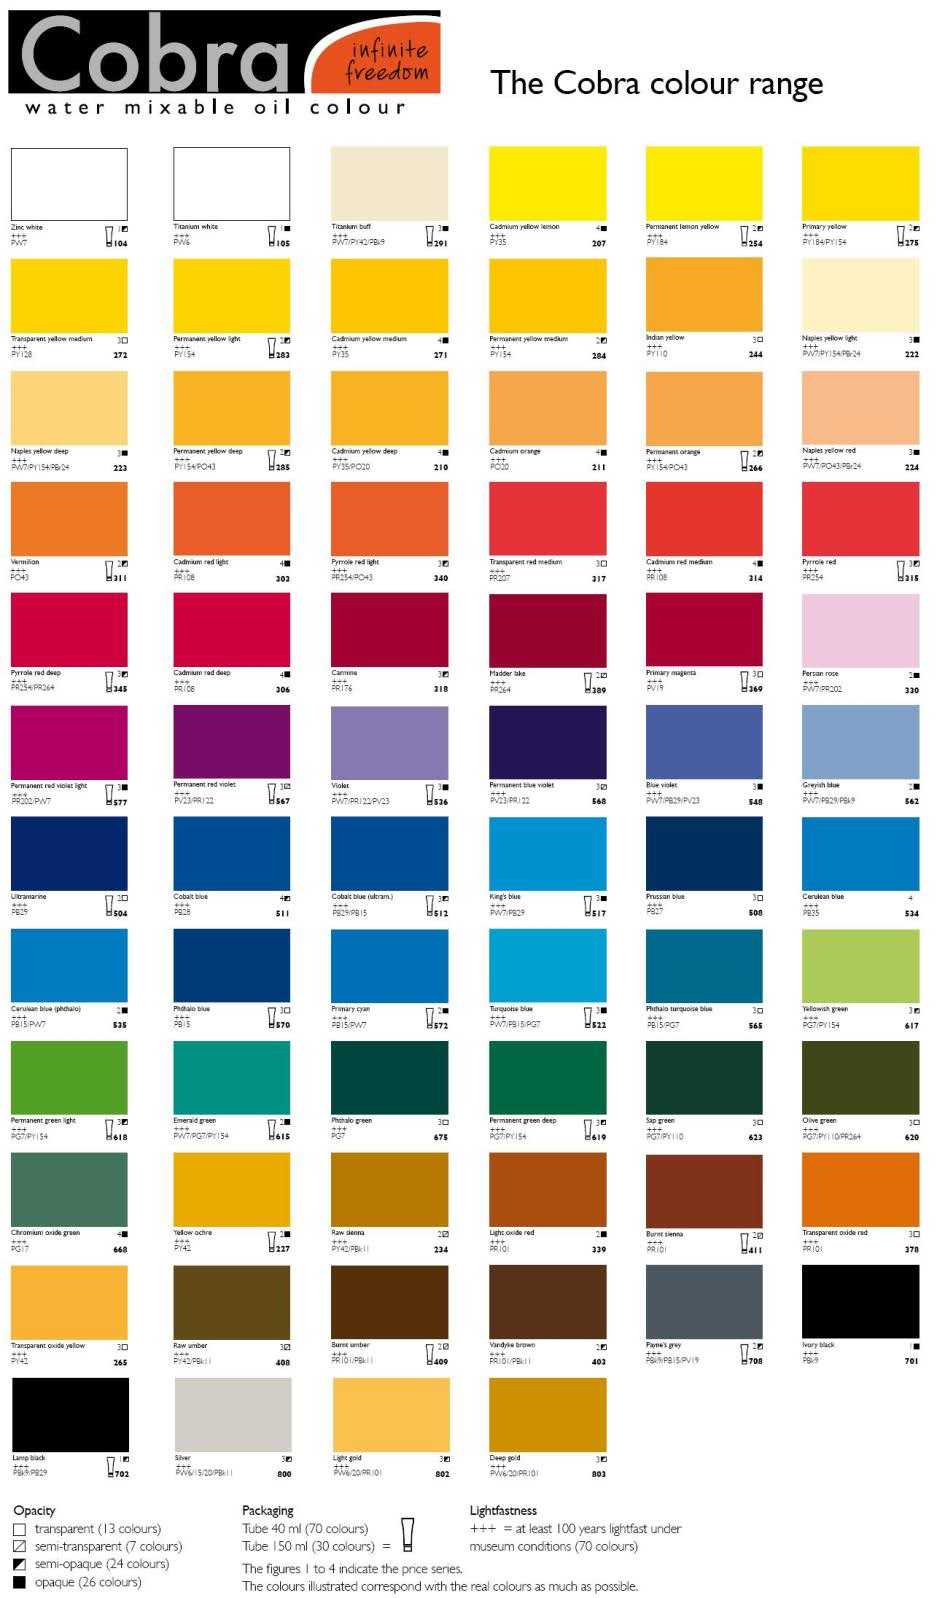 Oil Paint Colour Chart